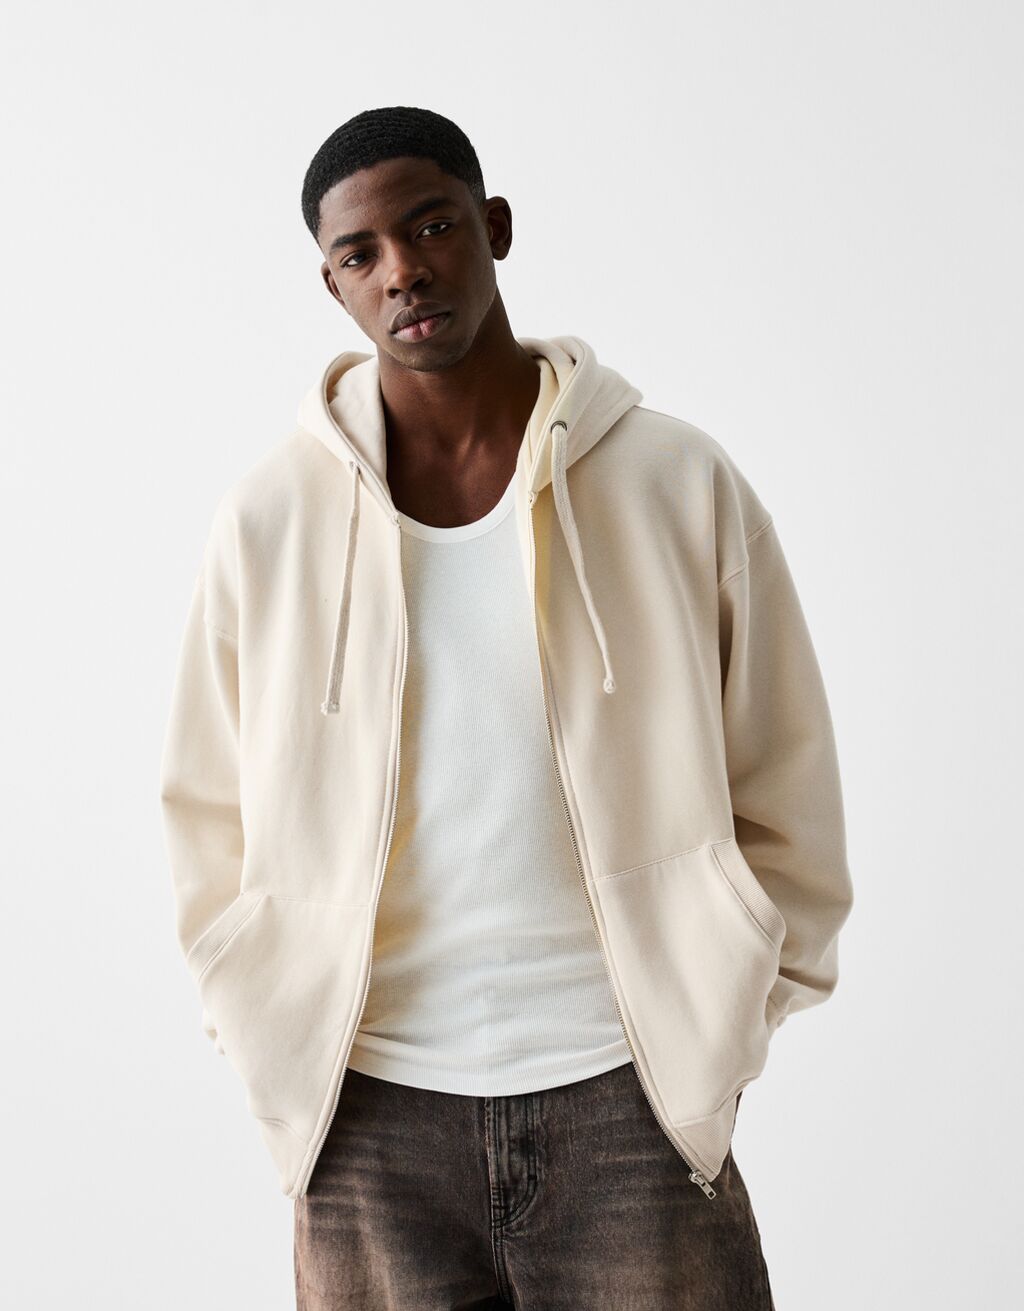 Zip-up hoodie - Sweatshirts and hoodies - Men | Bershka